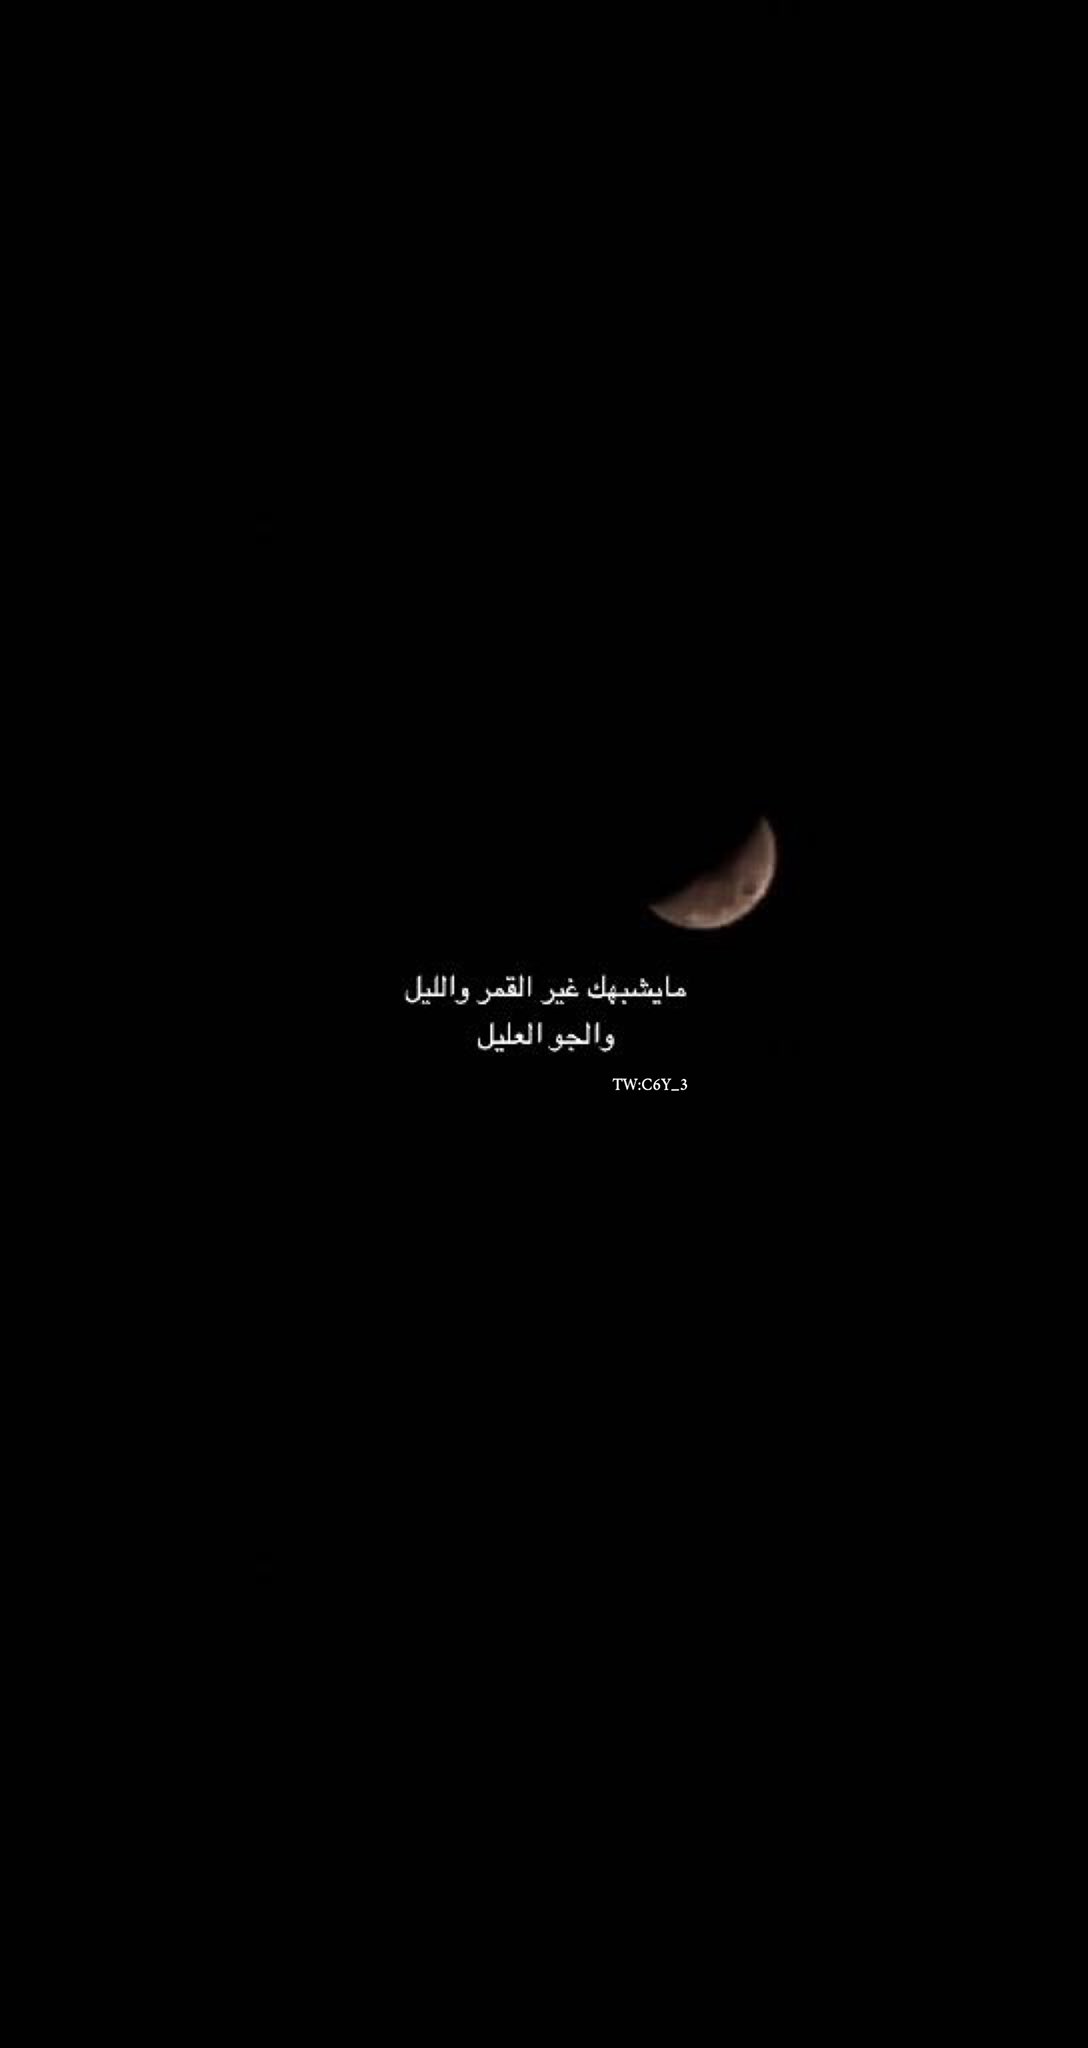 كلام عن القمر والليل